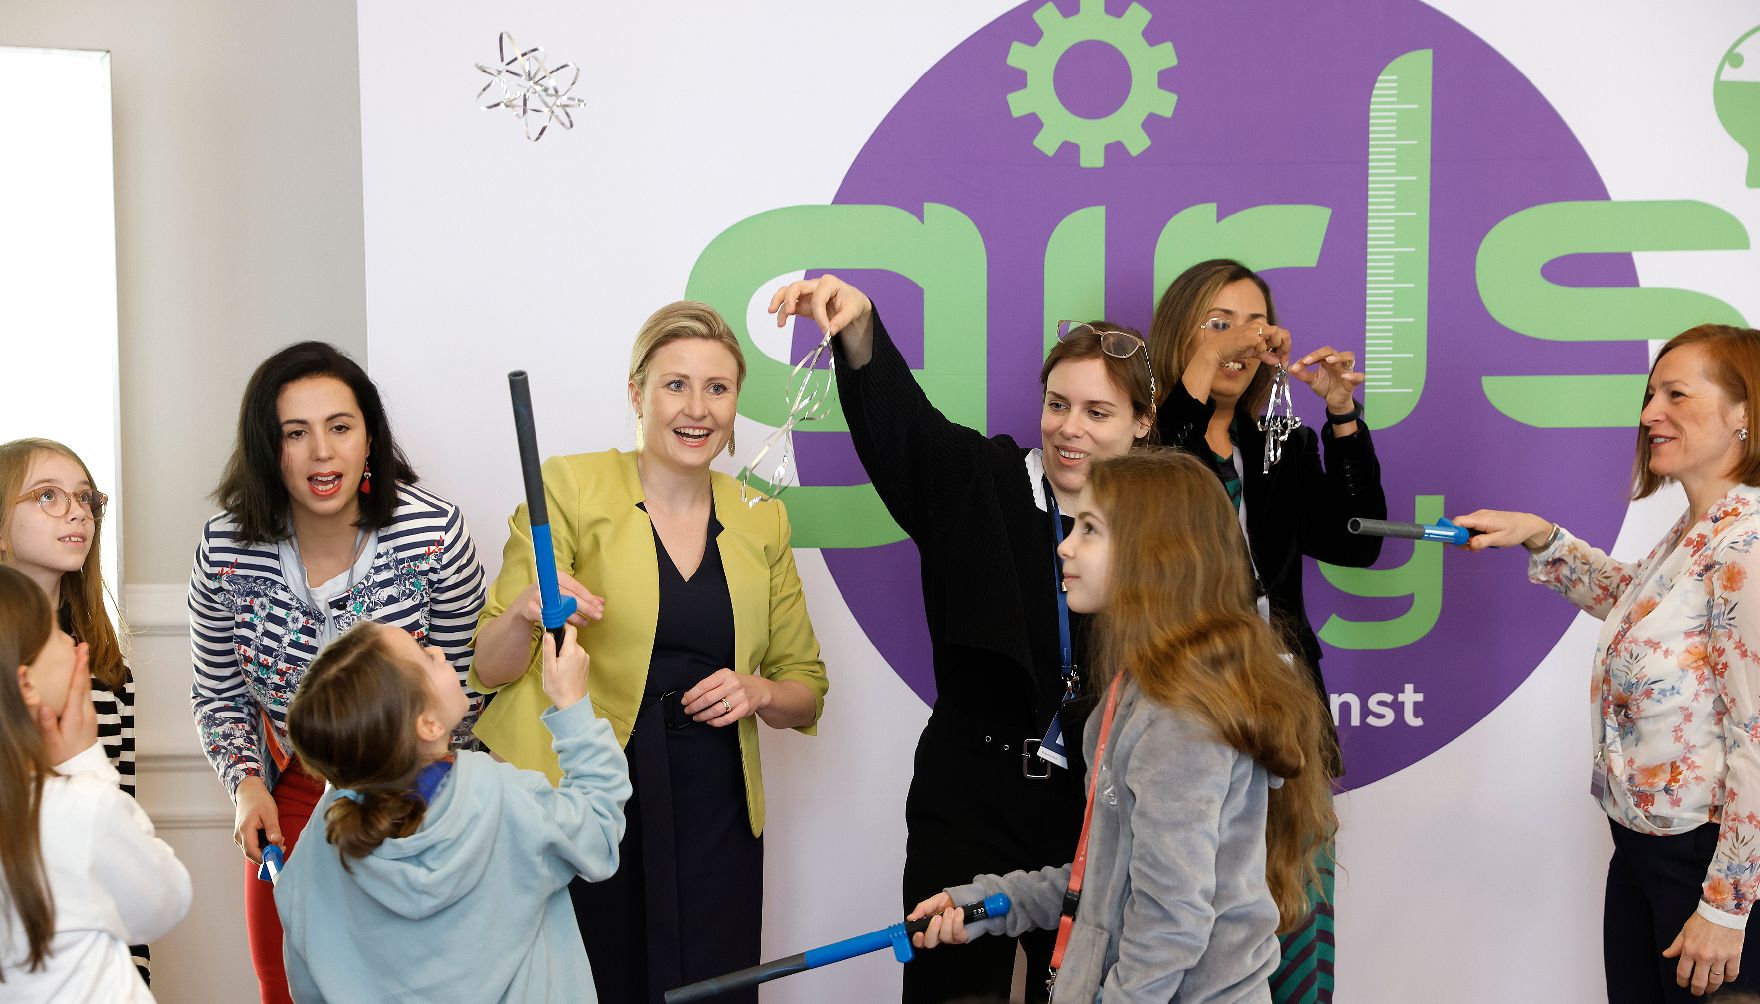 Am 27. April 2023 fand der Girls' Day im Bundeskanzleramt statt. Im Bild Bundesministerin Susanne Raab.